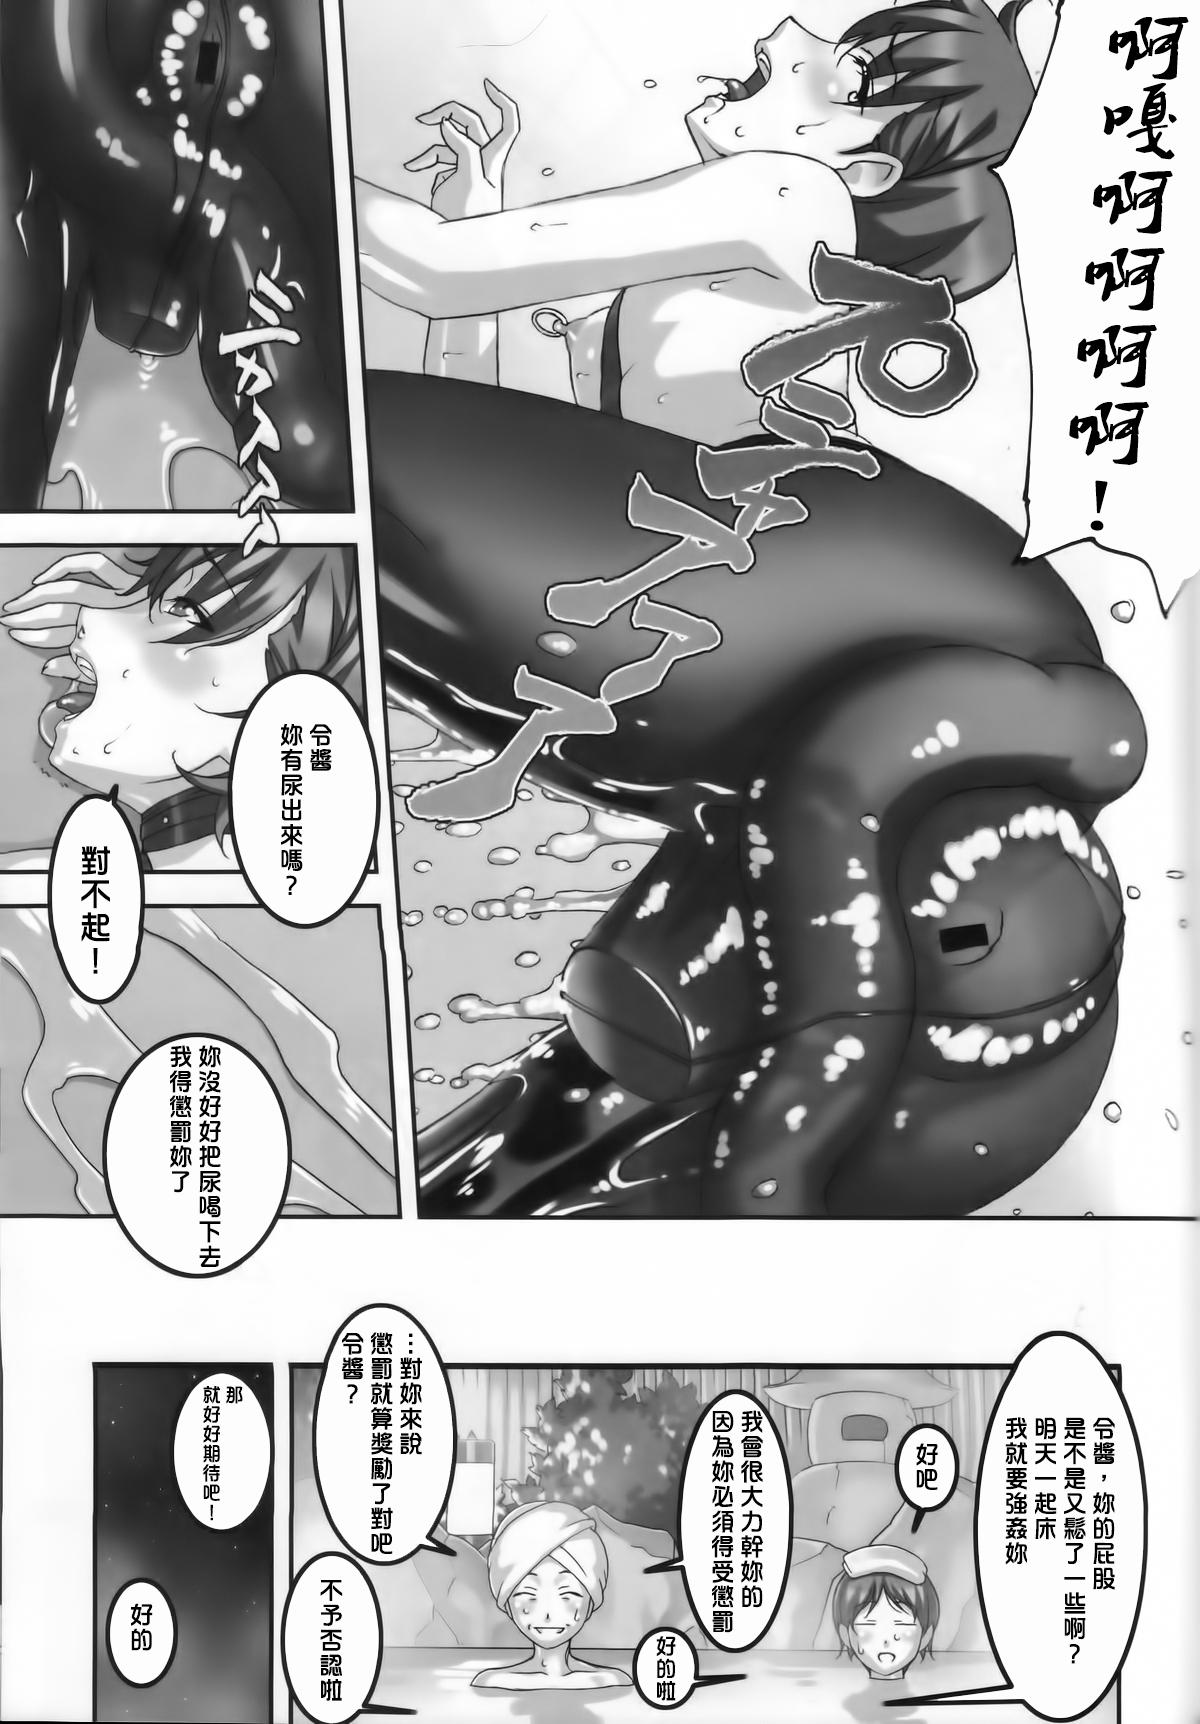 Anoko ga Natsuyasumi ni Ryokou saki de Oshiri no Ana wo Kizetsu suru hodo Naburare tsuzukeru Manga 20